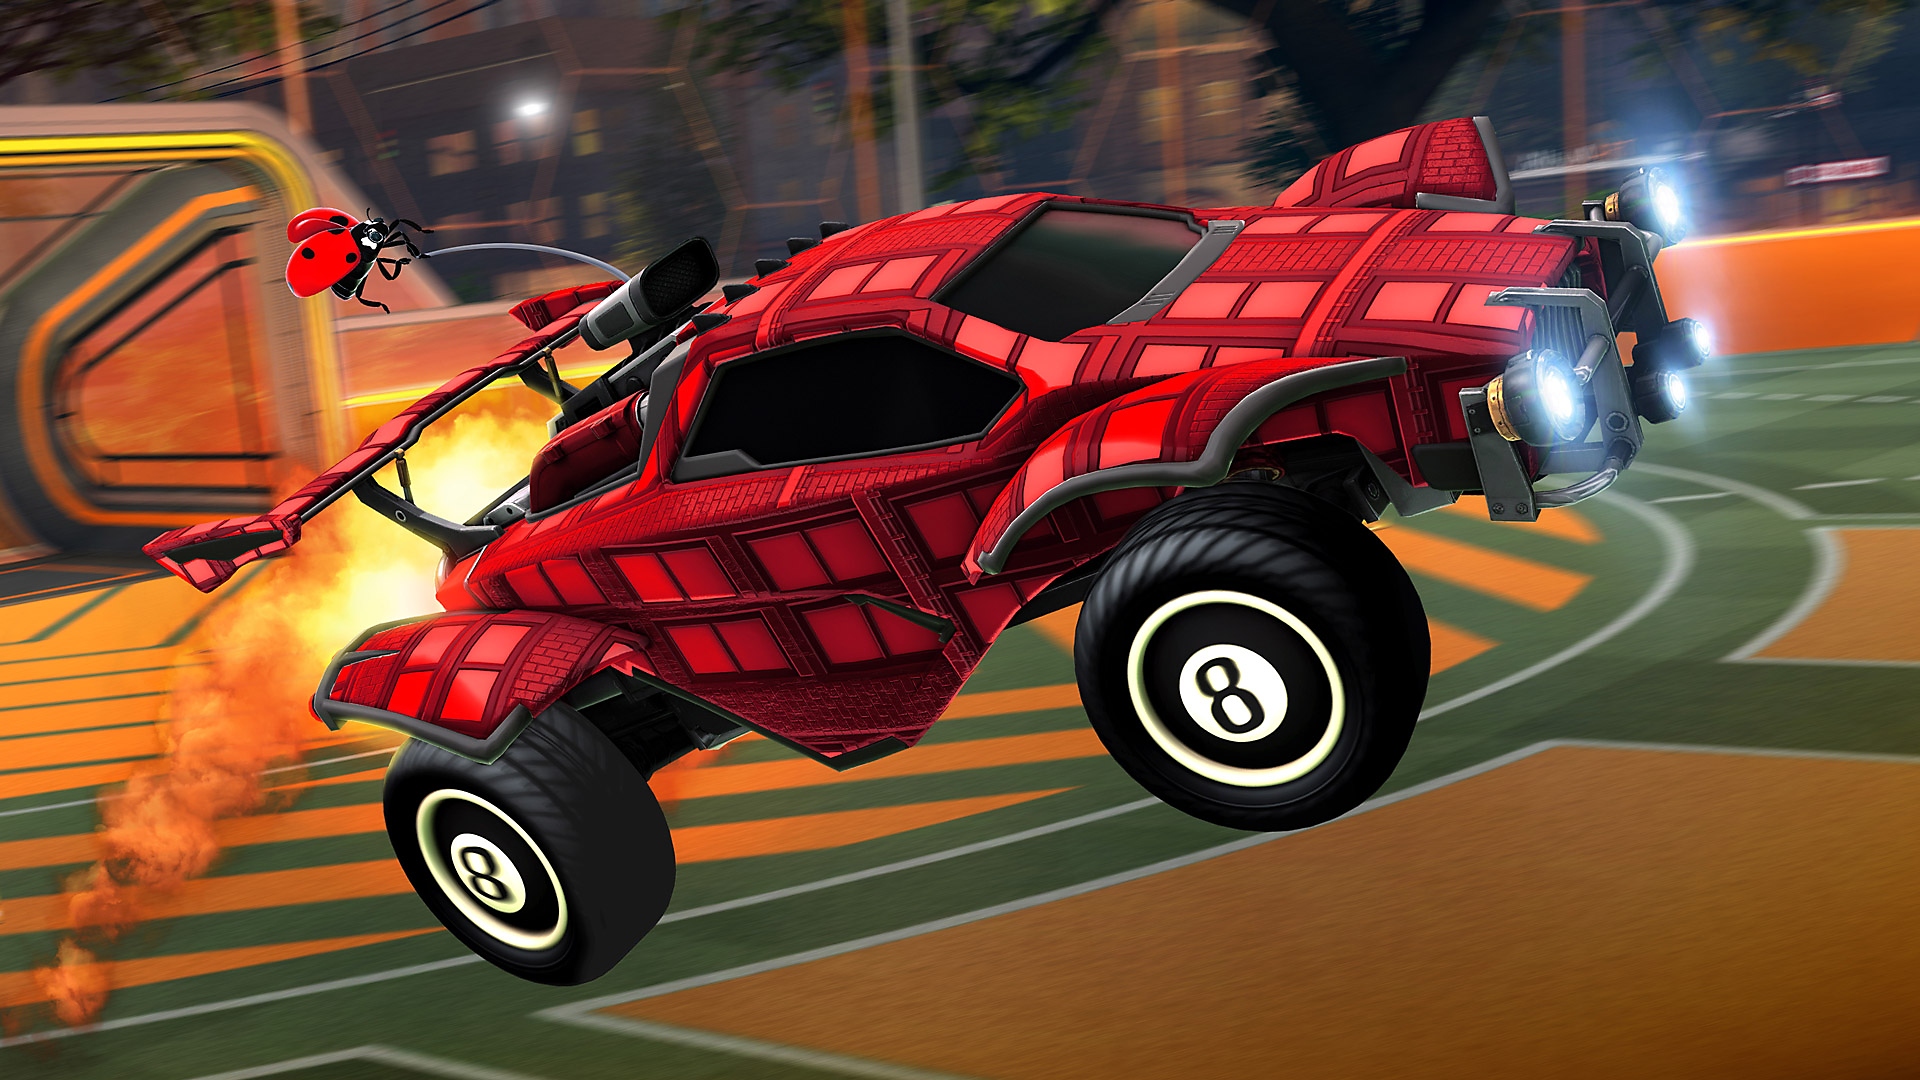 Rocket League - captura de tela mostrando um carro vermelho